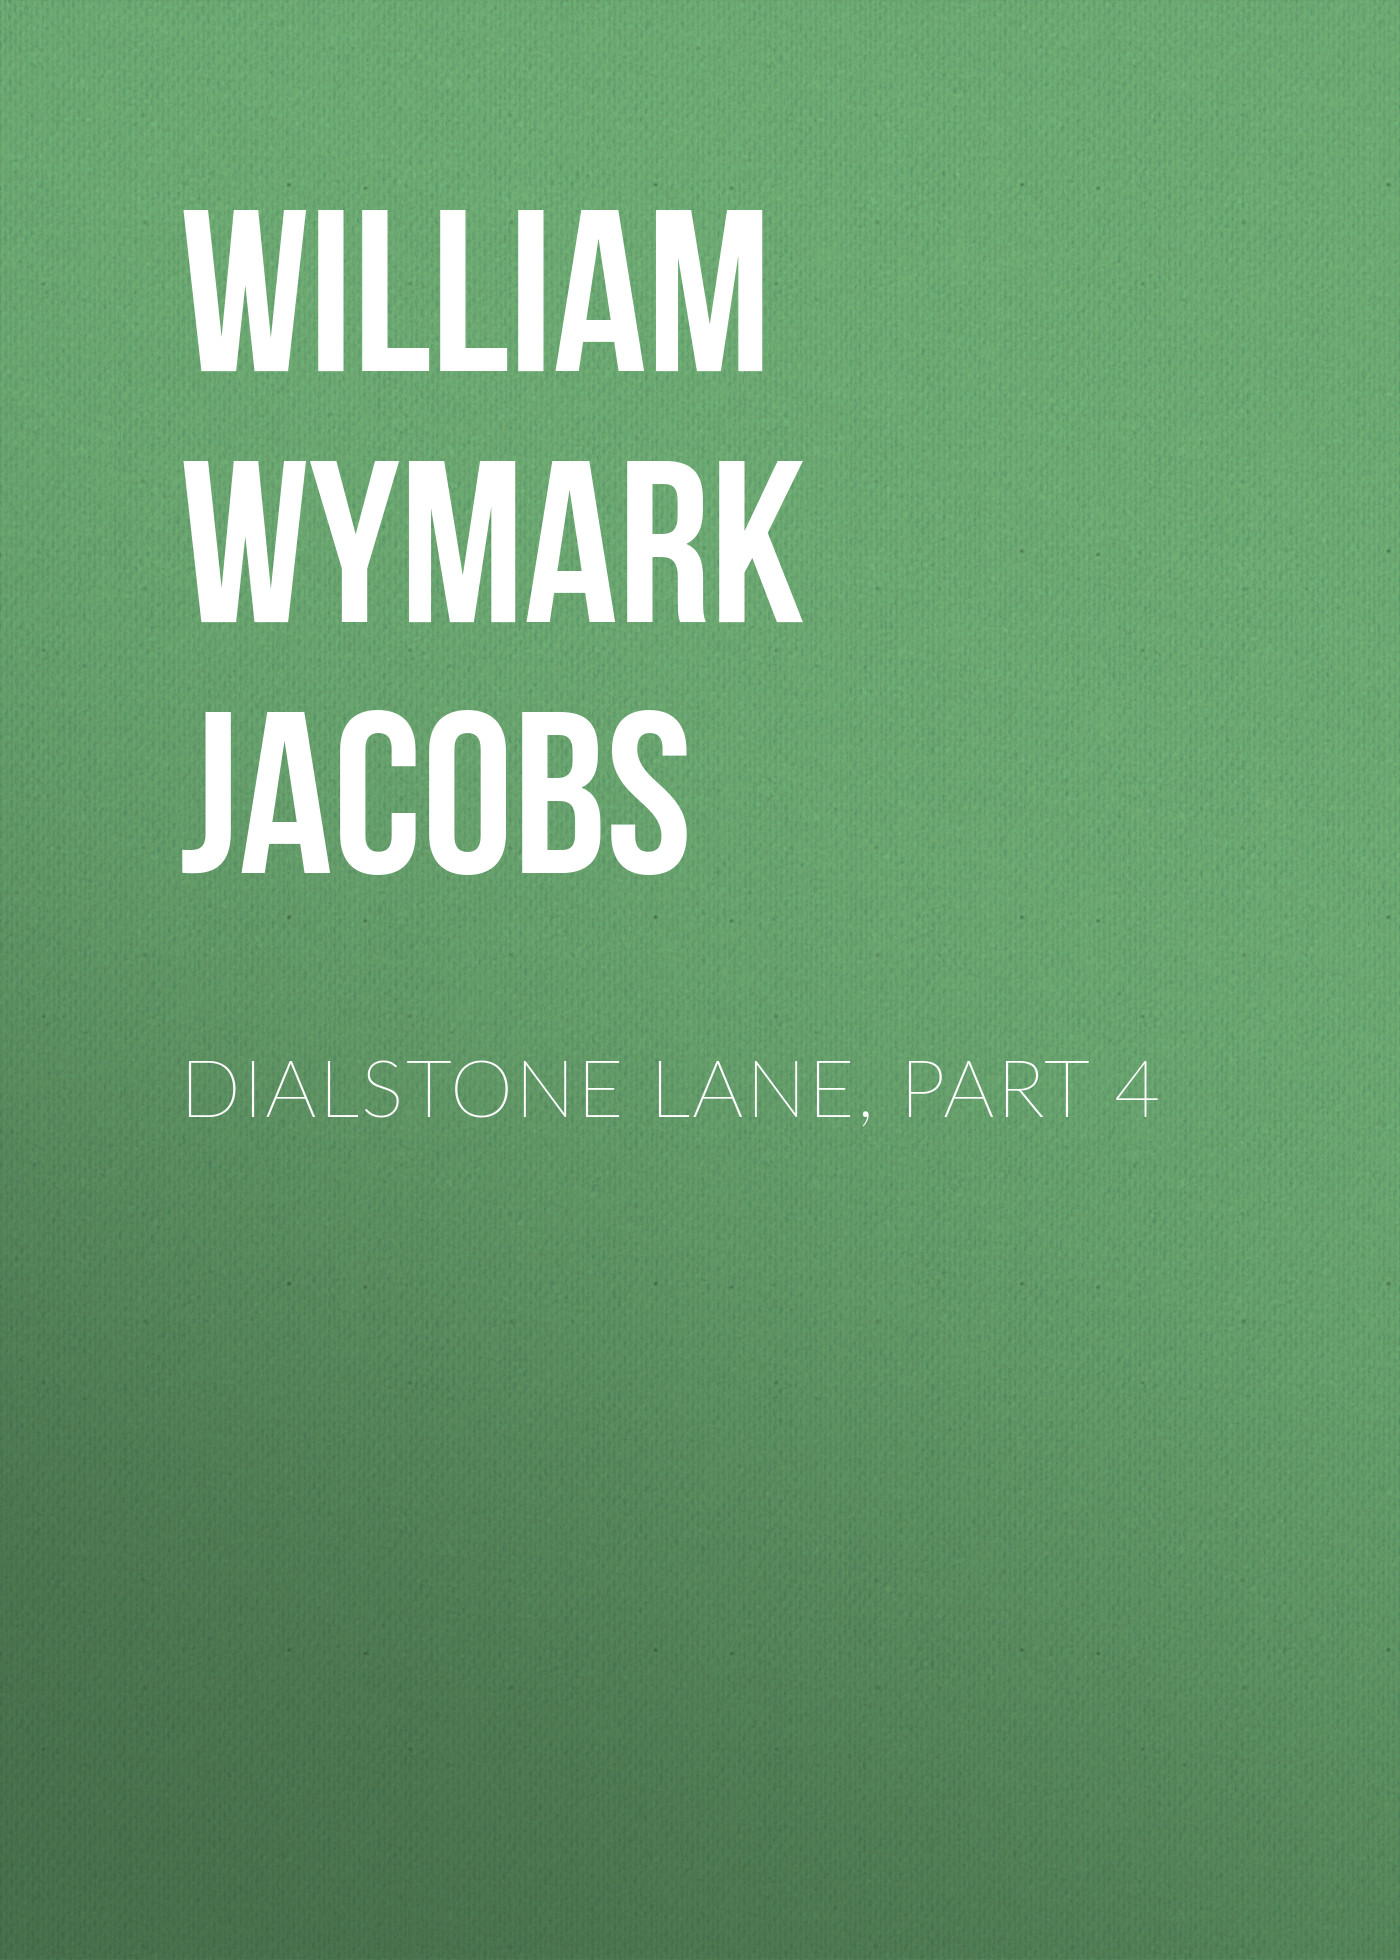 Книга Dialstone Lane, Part 4 из серии , созданная William Wymark Jacobs, может относится к жанру Книги о Путешествиях, Зарубежная старинная литература, Зарубежная классика. Стоимость электронной книги Dialstone Lane, Part 4 с идентификатором 34844278 составляет 0 руб.